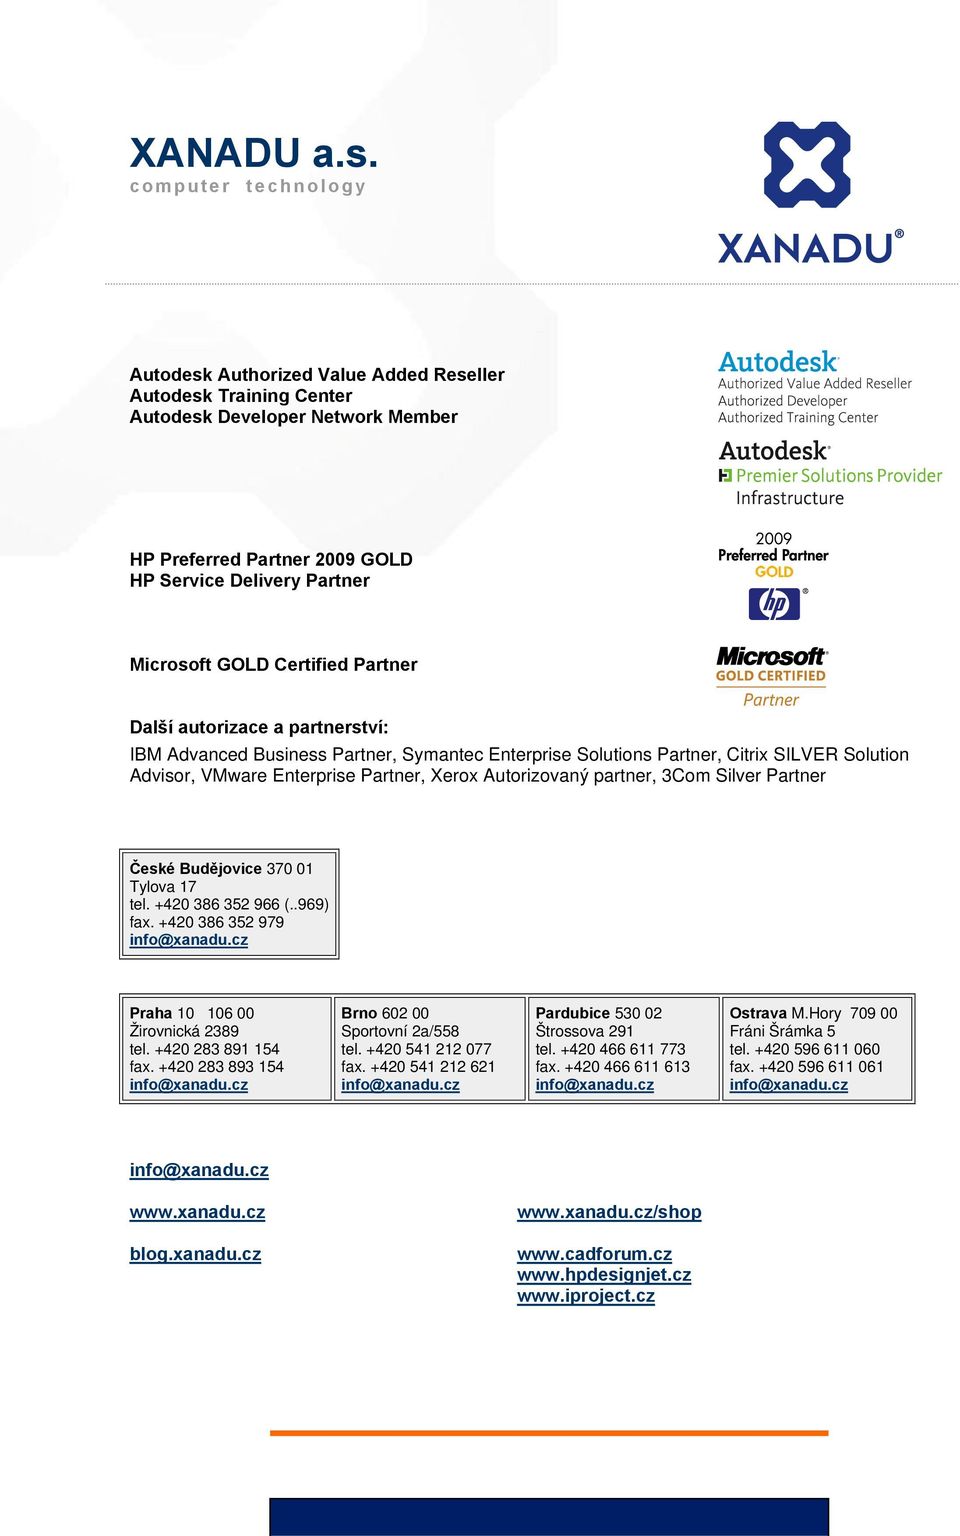 Certified Partner Další autorizace a partnerství: IBM Advanced Business Partner, Symantec Enterprise Solutions Partner, Citrix SILVER Solution Advisor, VMware Enterprise Partner, Xerox Autorizovaný